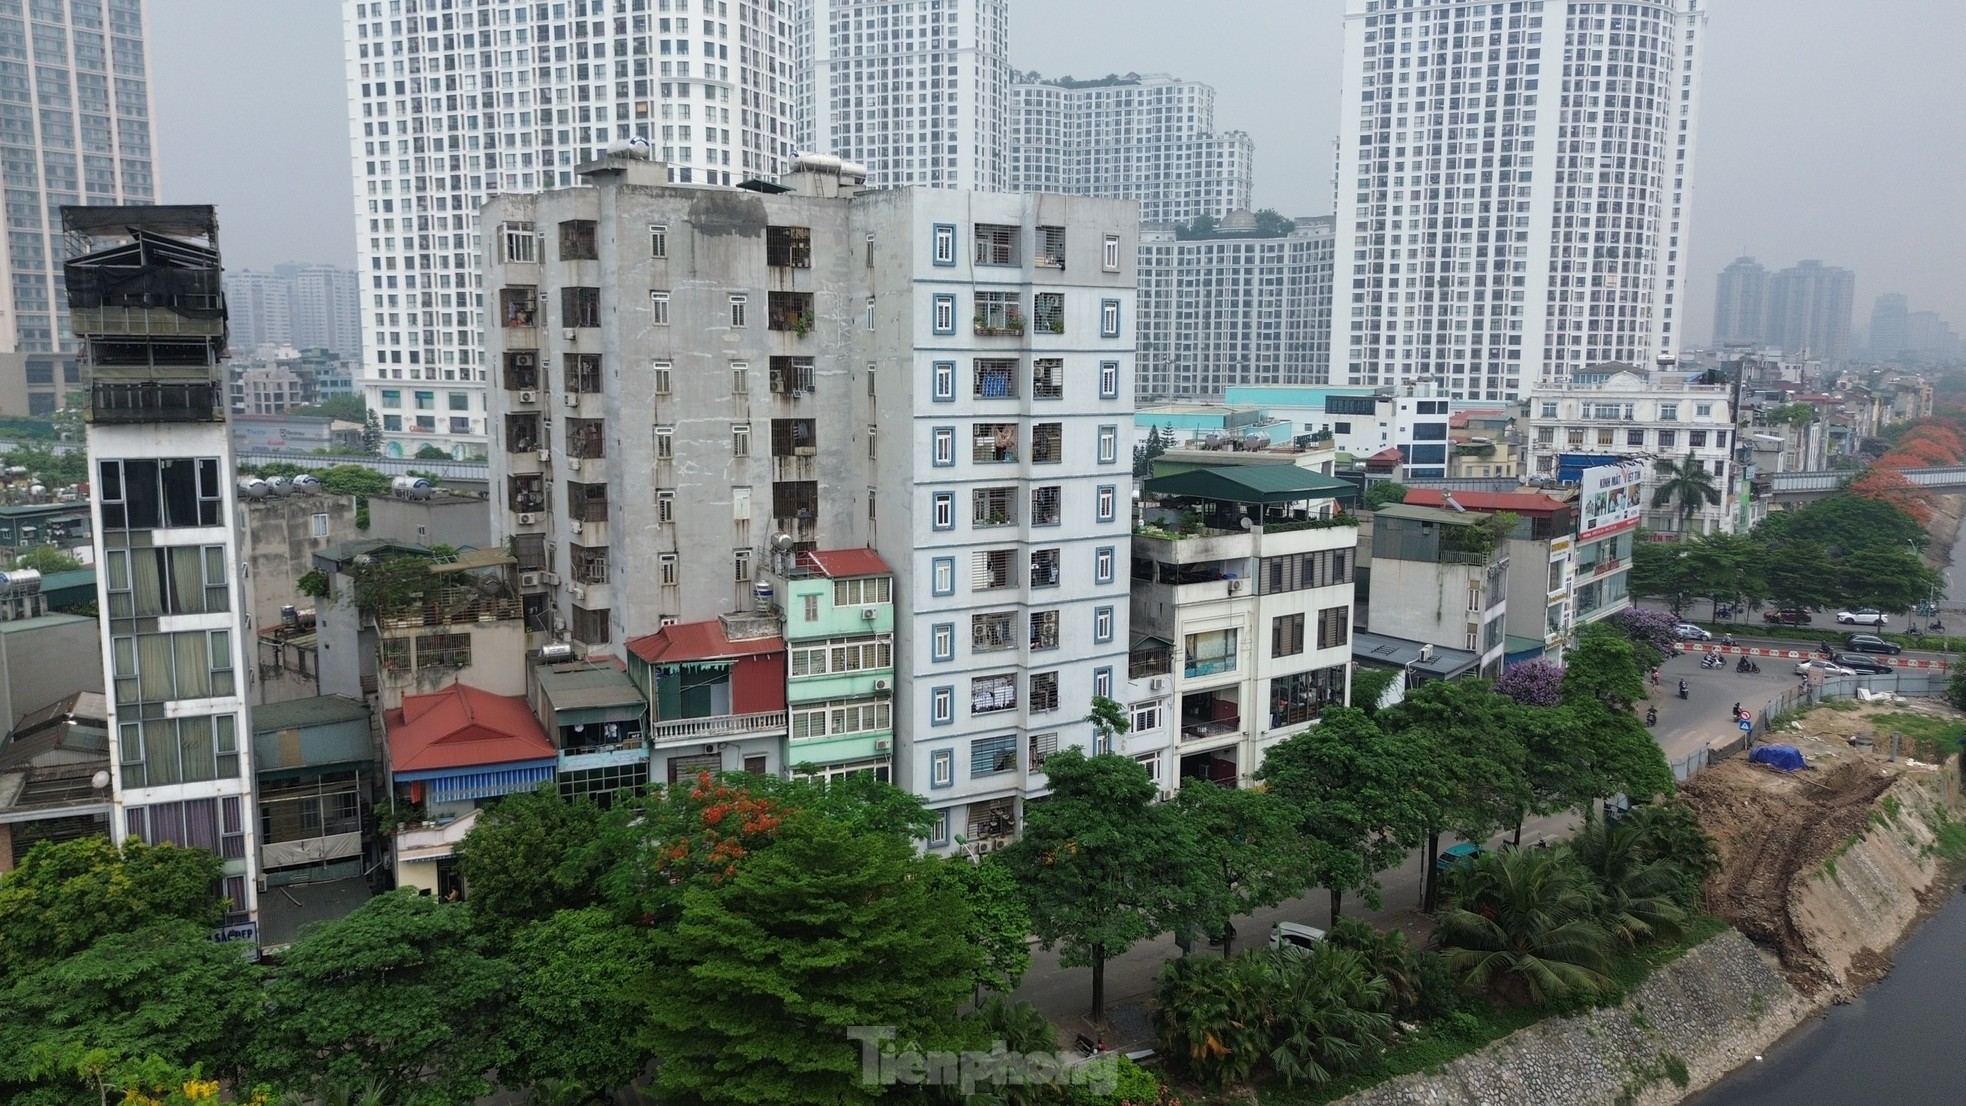 Nhà trọ, chung cư mini tràn lan không đảm bảo phòng cháy chữa cháy ở Hà Nội - Ảnh 13